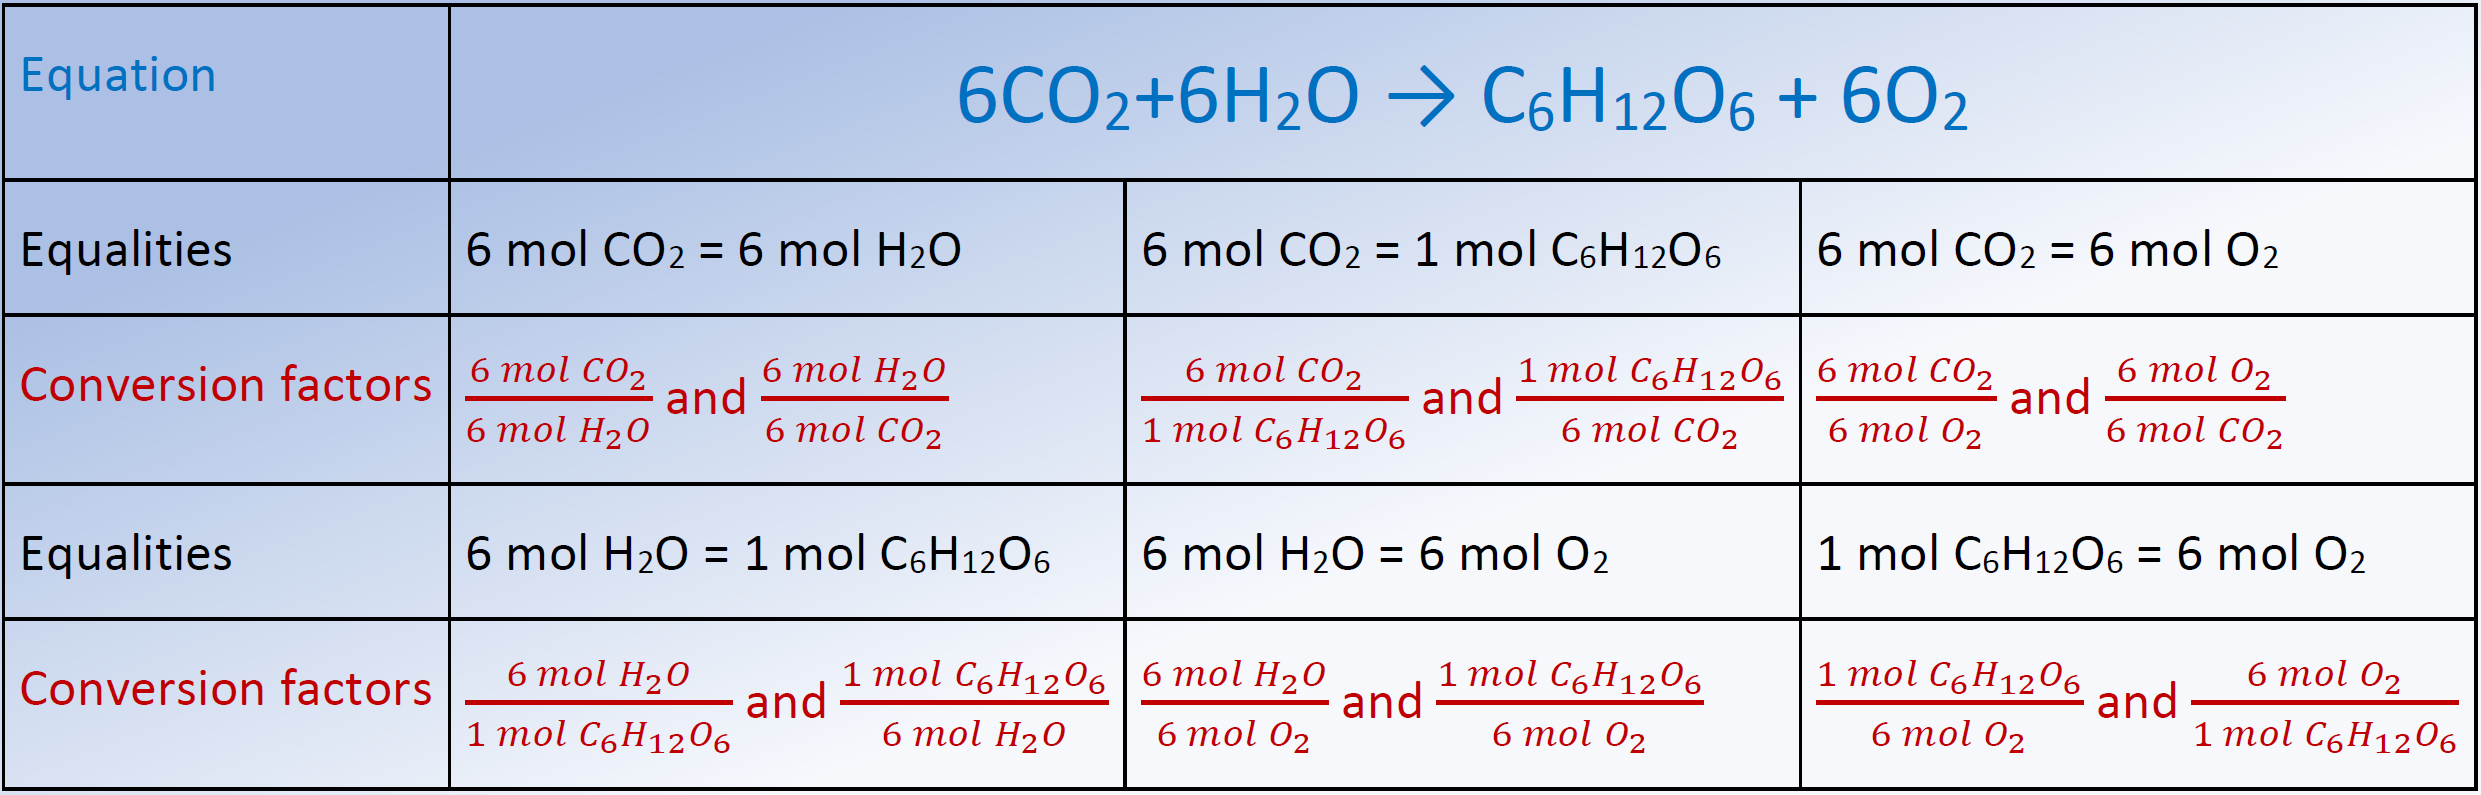 Factores estequiométricos a partir de una ecuación de reacción de fotosíntesis equilibrada